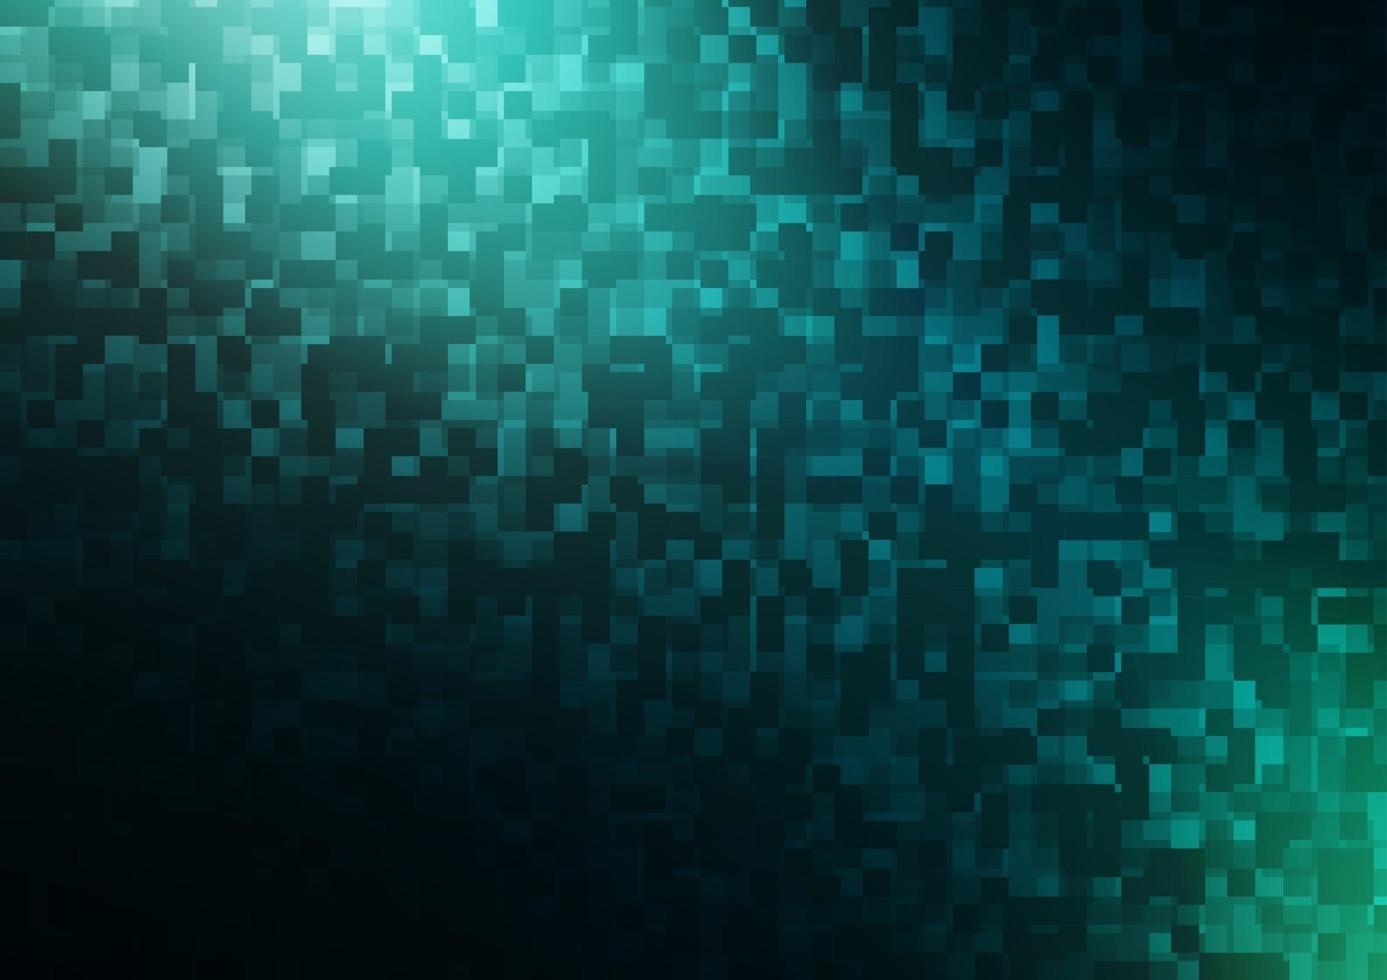 texture de vecteur bleu foncé, vert dans un style rectangulaire.